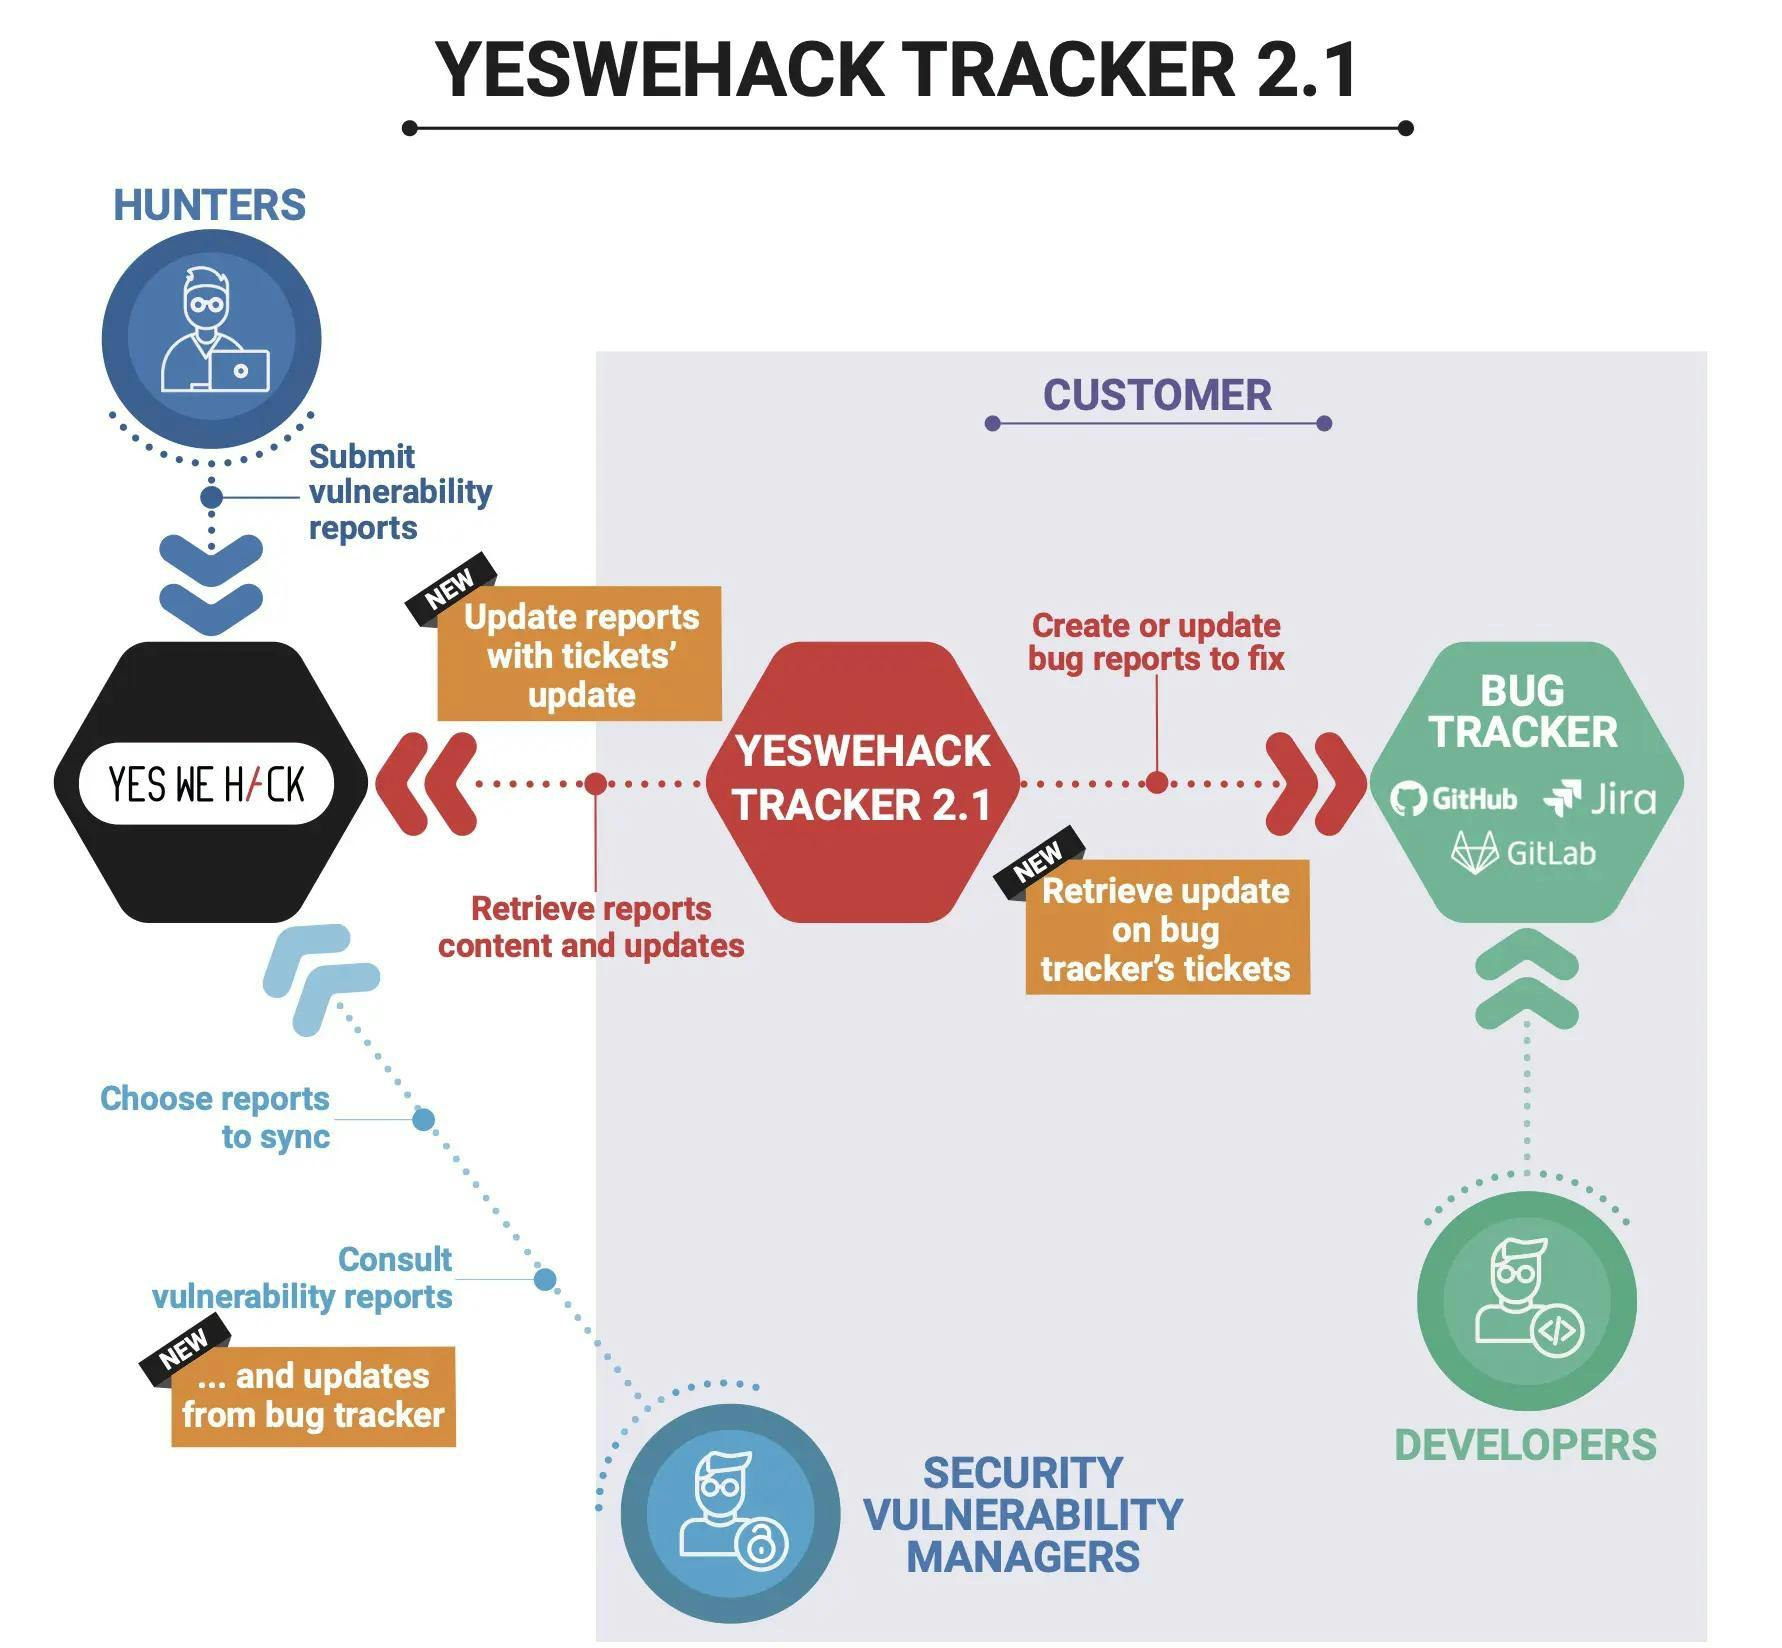 YesWeHack tracker 2.1